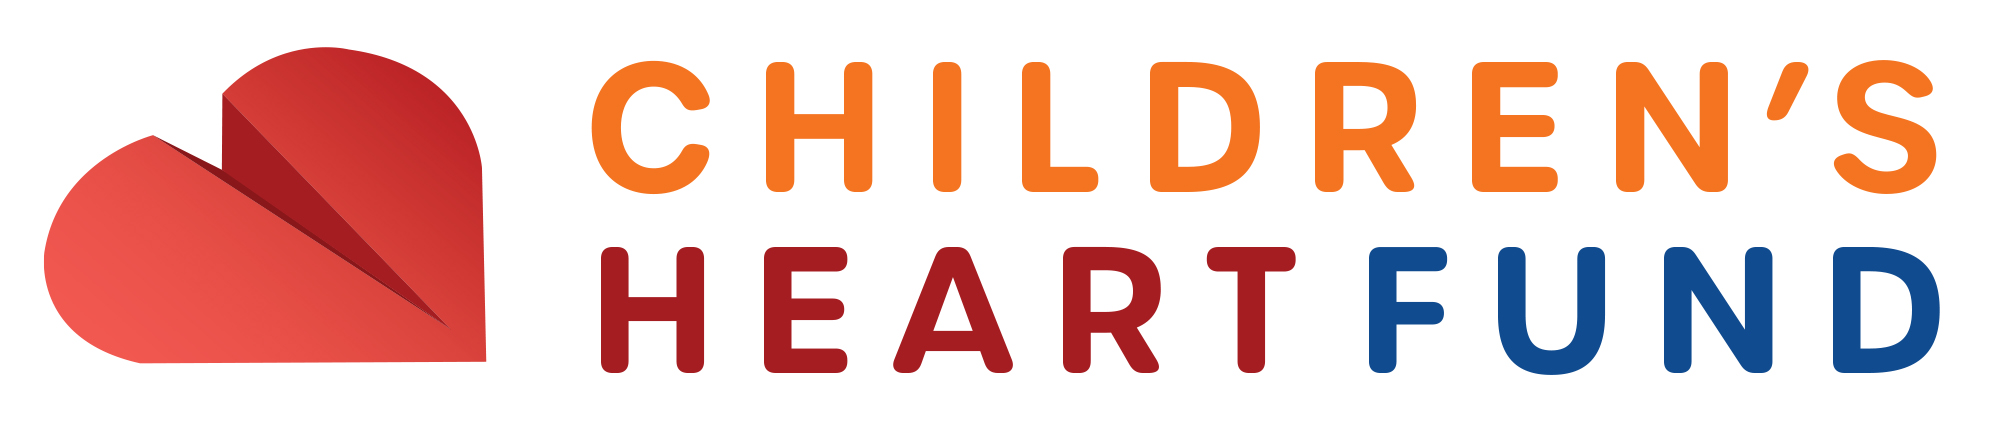 Children's Heart Fund logo